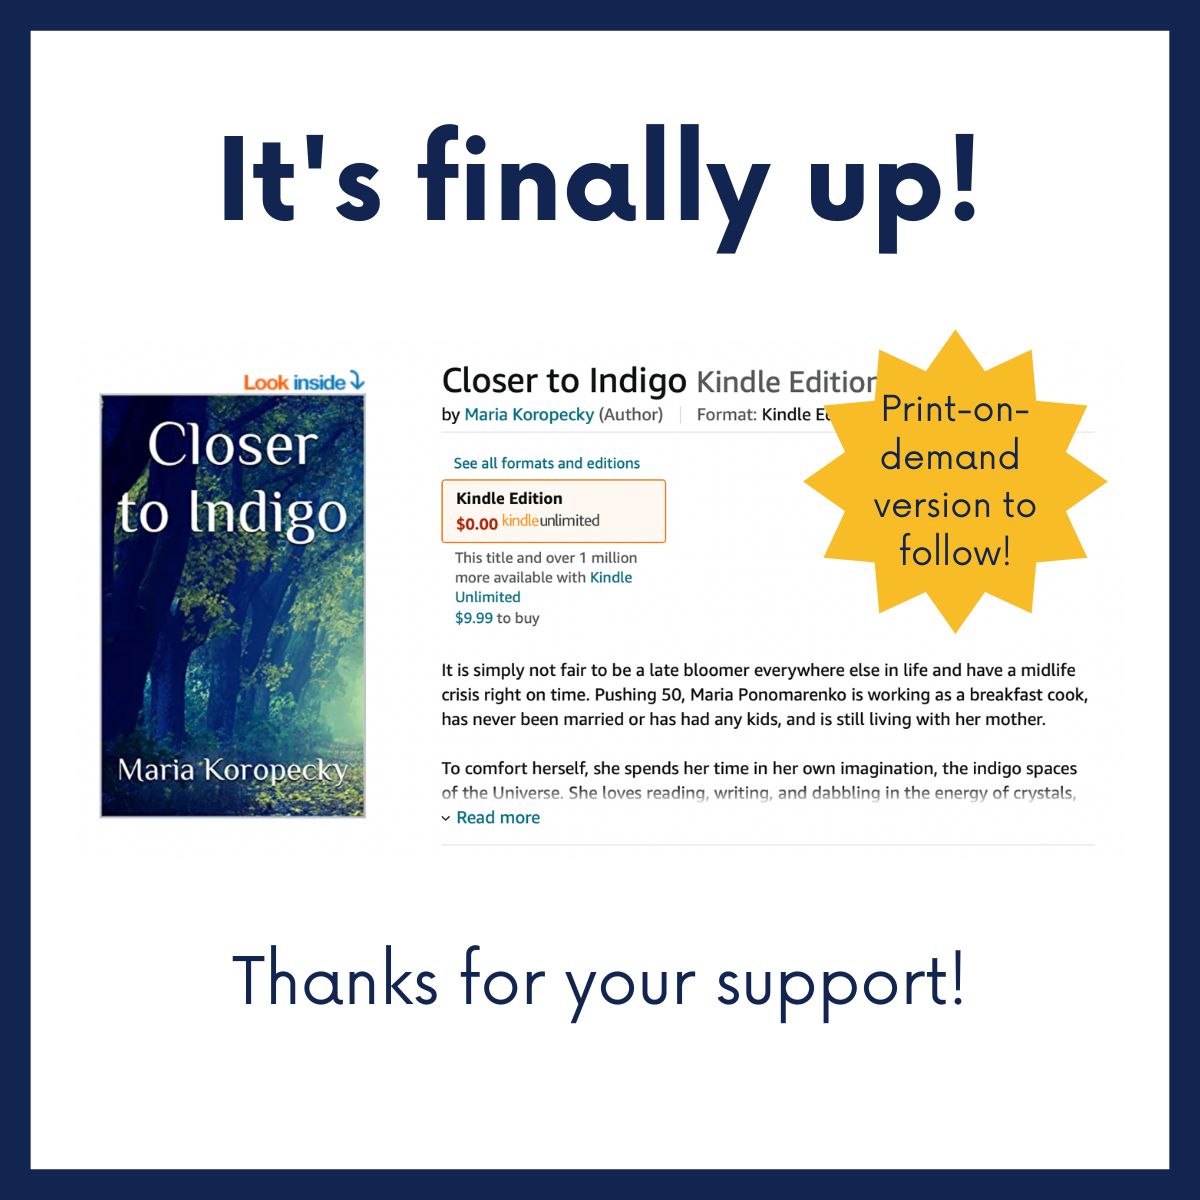 Buy Maria's novel, "Closer to Indigo" today!